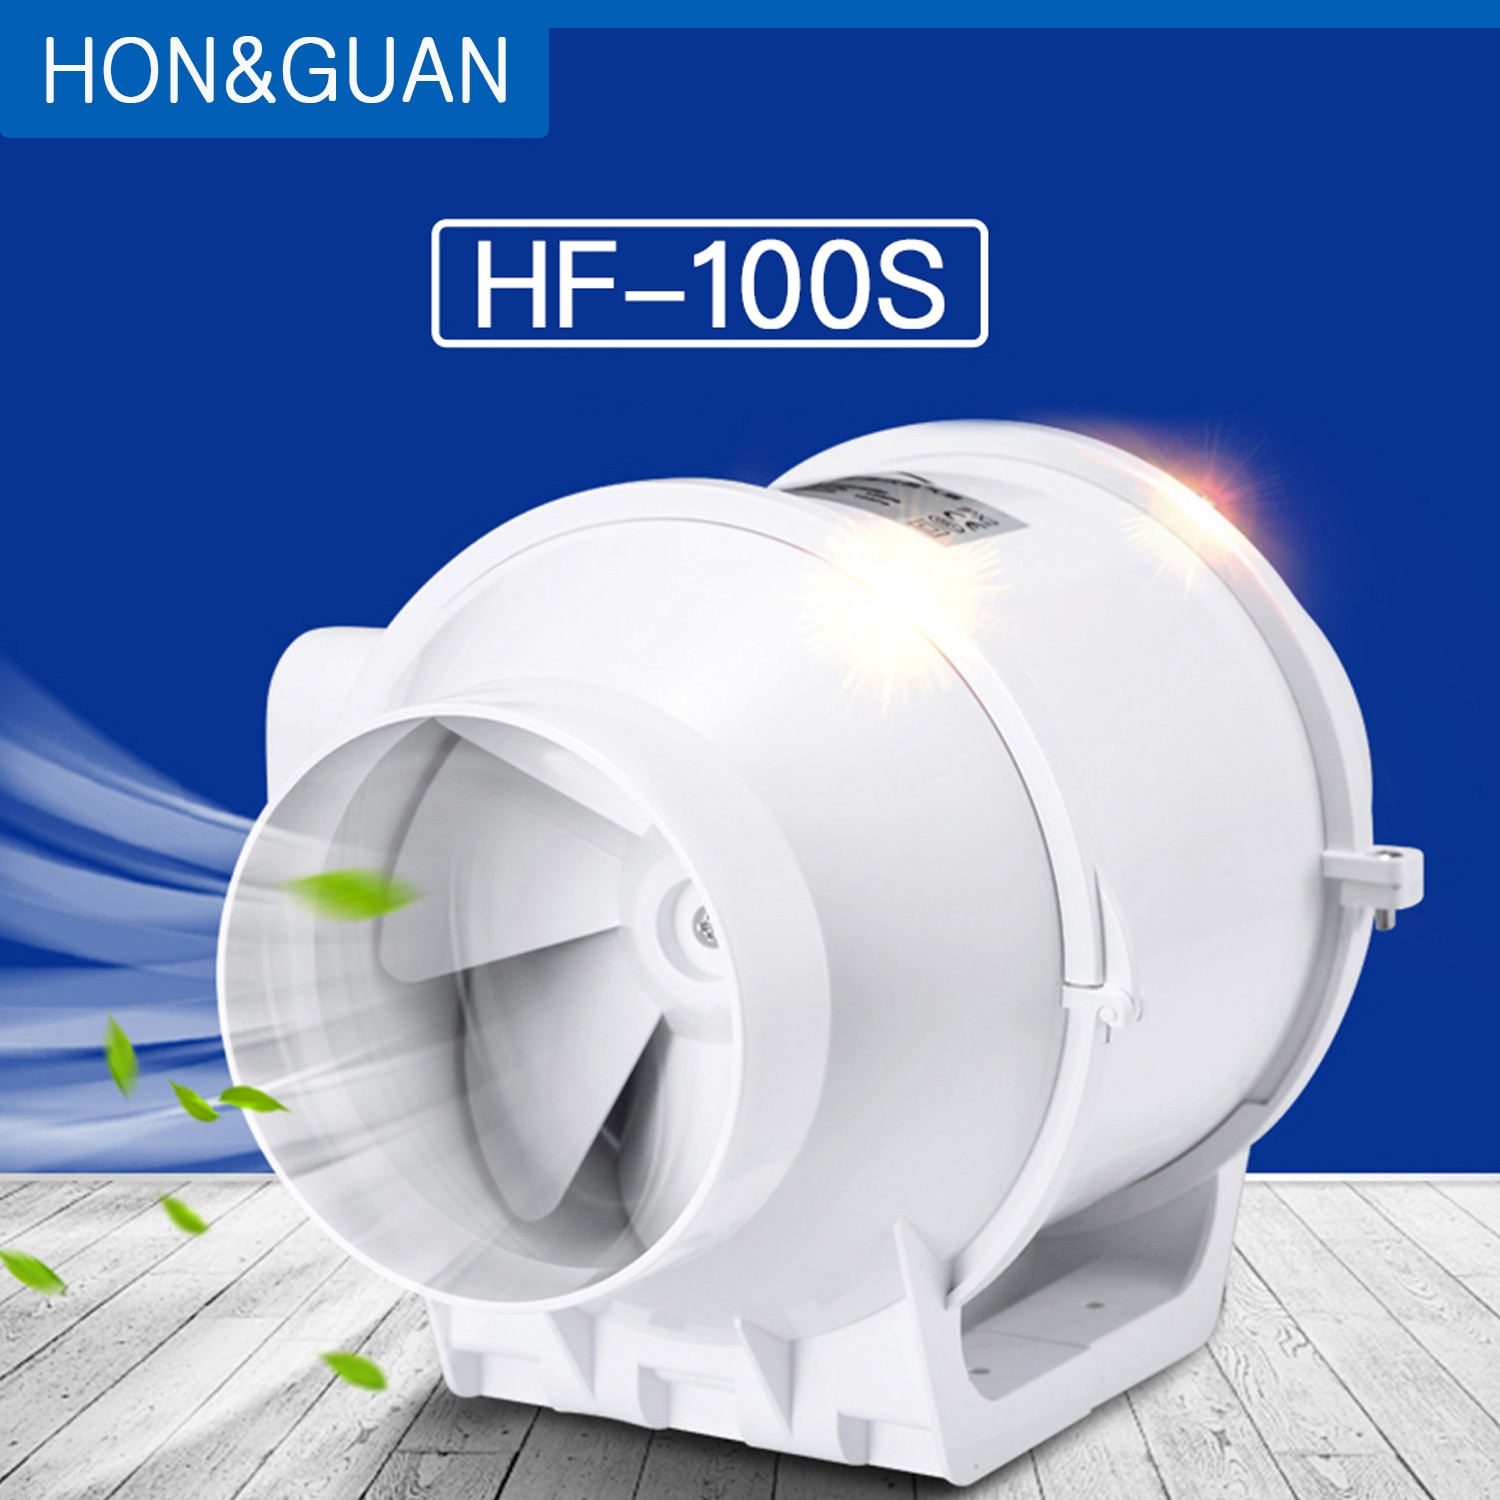 Us 4349 42 Offhonguan 4 Inline Duct Fan Booster Fan Plastic Waterproof Ventilation Pipe Exhaust Ceiling Bathroom Extractor Fan Hf 100sfans regarding measurements 1500 X 1500